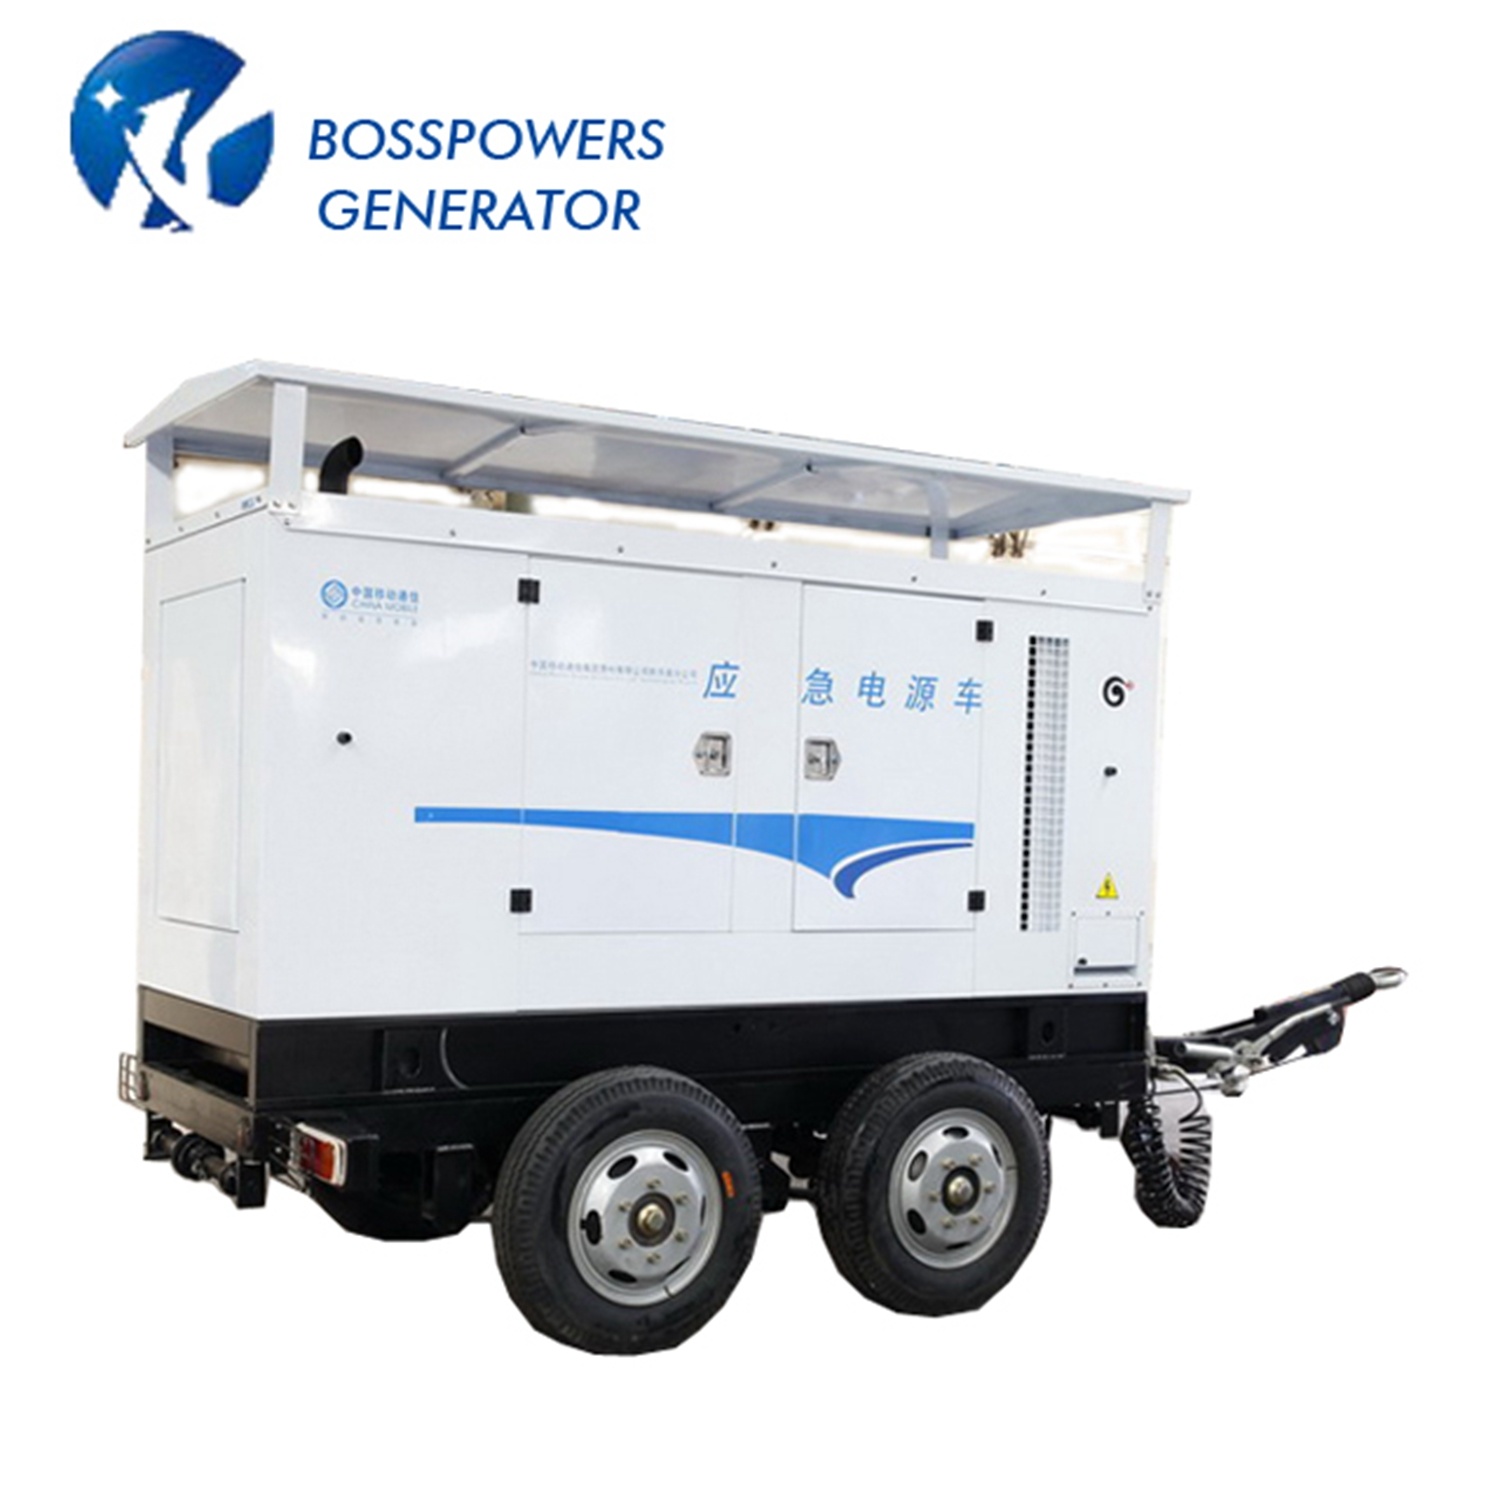 200kw Industrial Trailer Diesel Generating Electric Power Generator Silent Rainproof